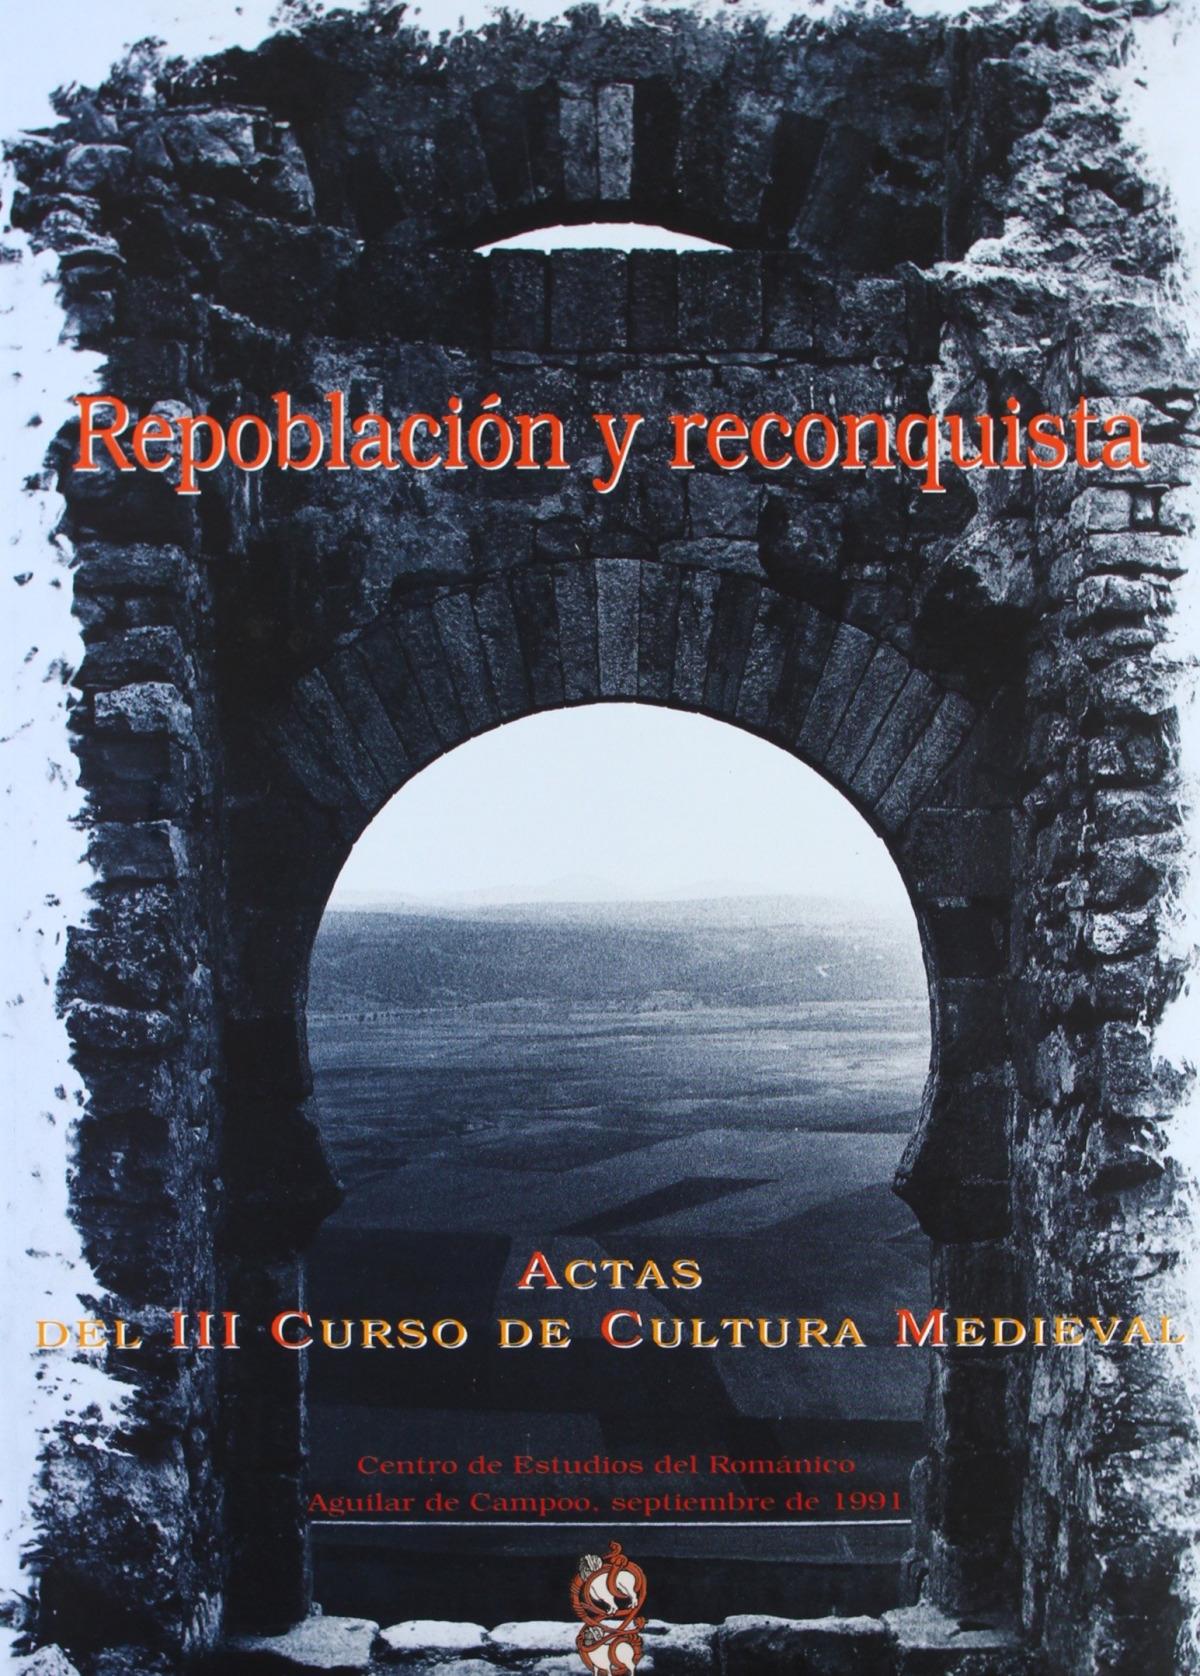 Repoblación y Reconquista "Actas del III Curso de Cultura Medieval"